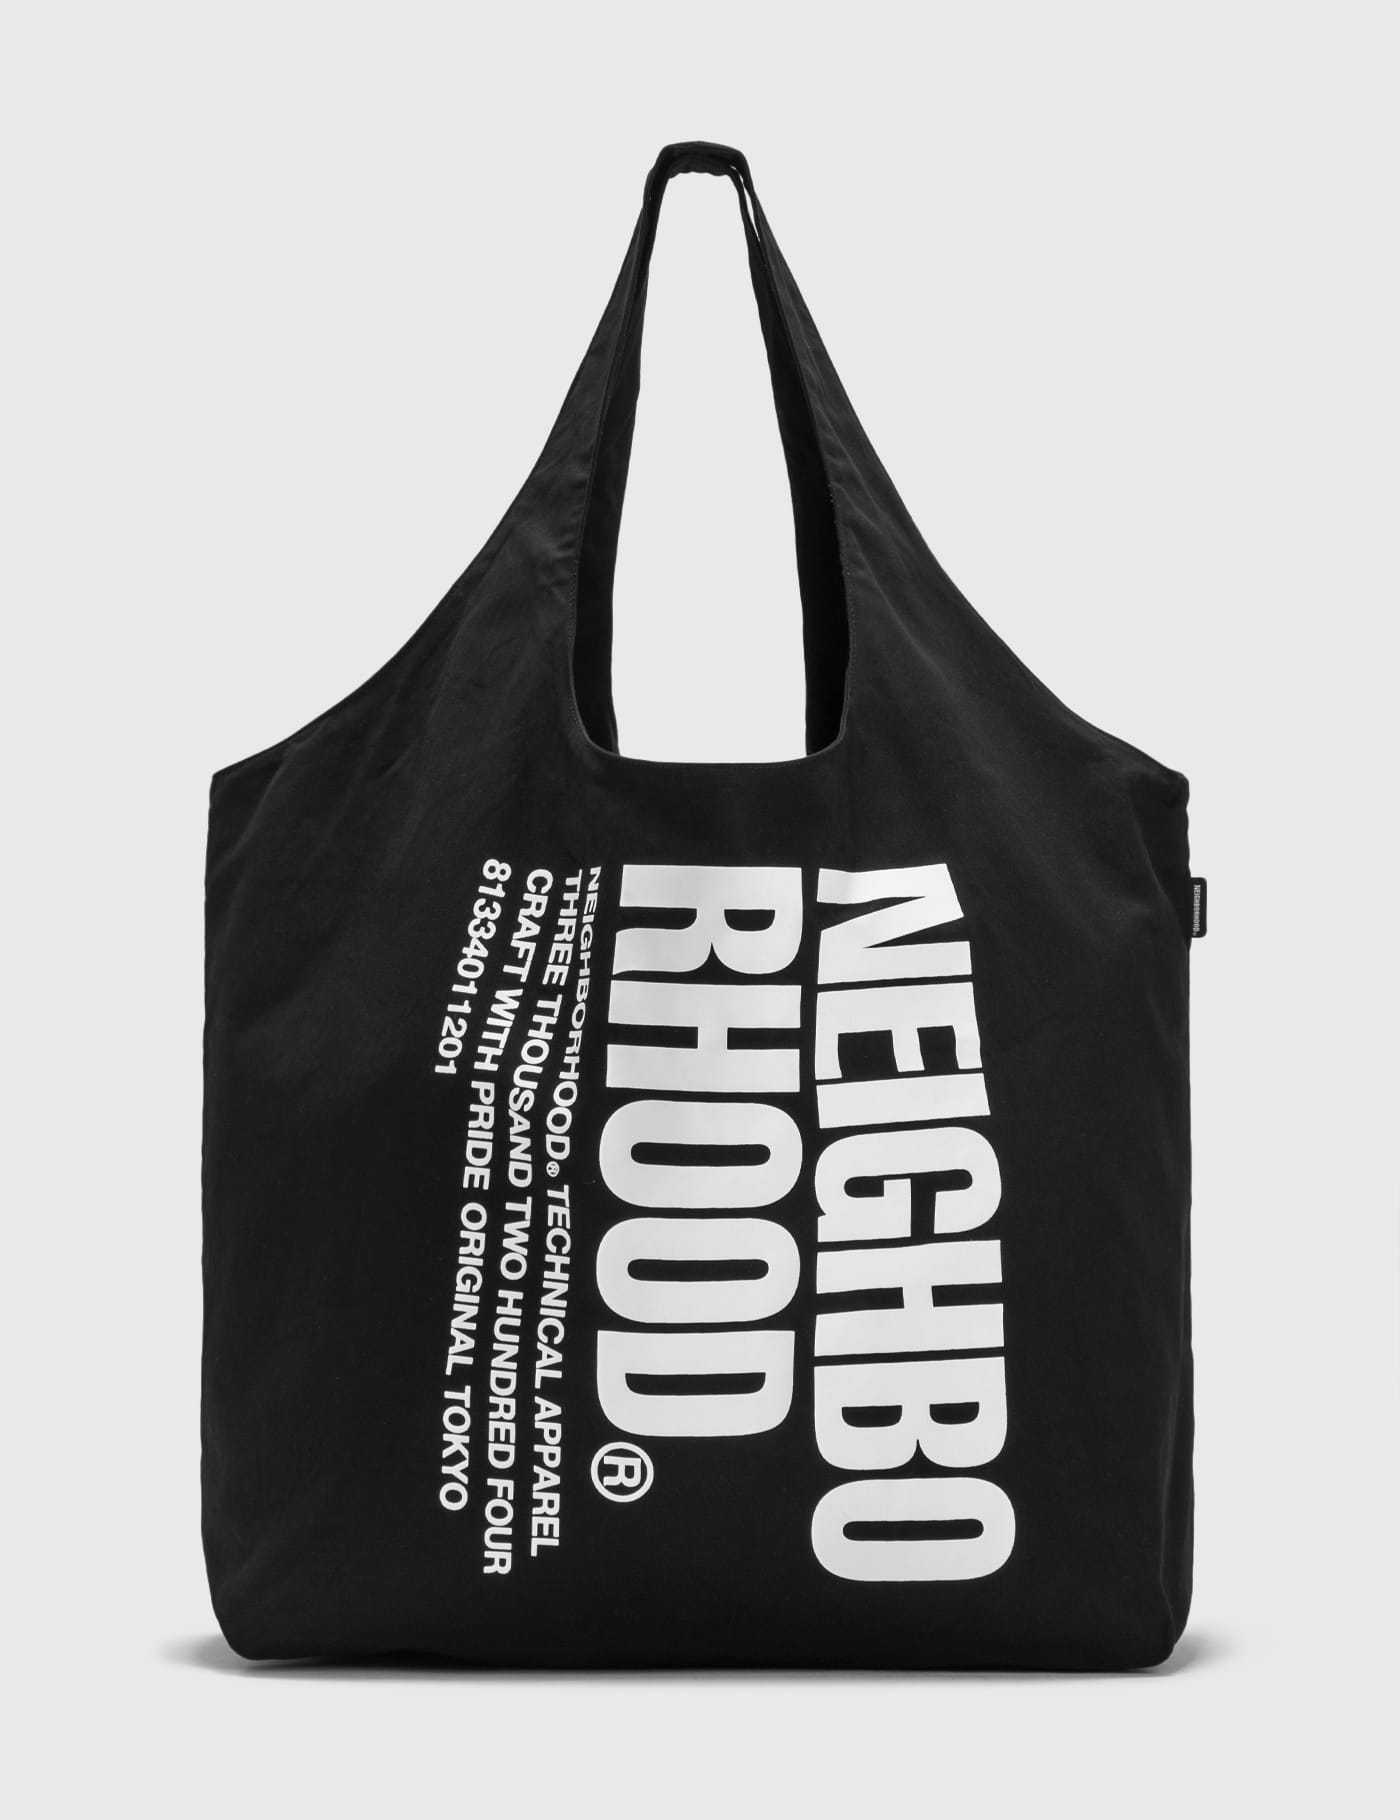 NEIGHBORHOOD - ID Tote Bag | HBX - HYPEBEAST 為您搜羅全球潮流時尚品牌